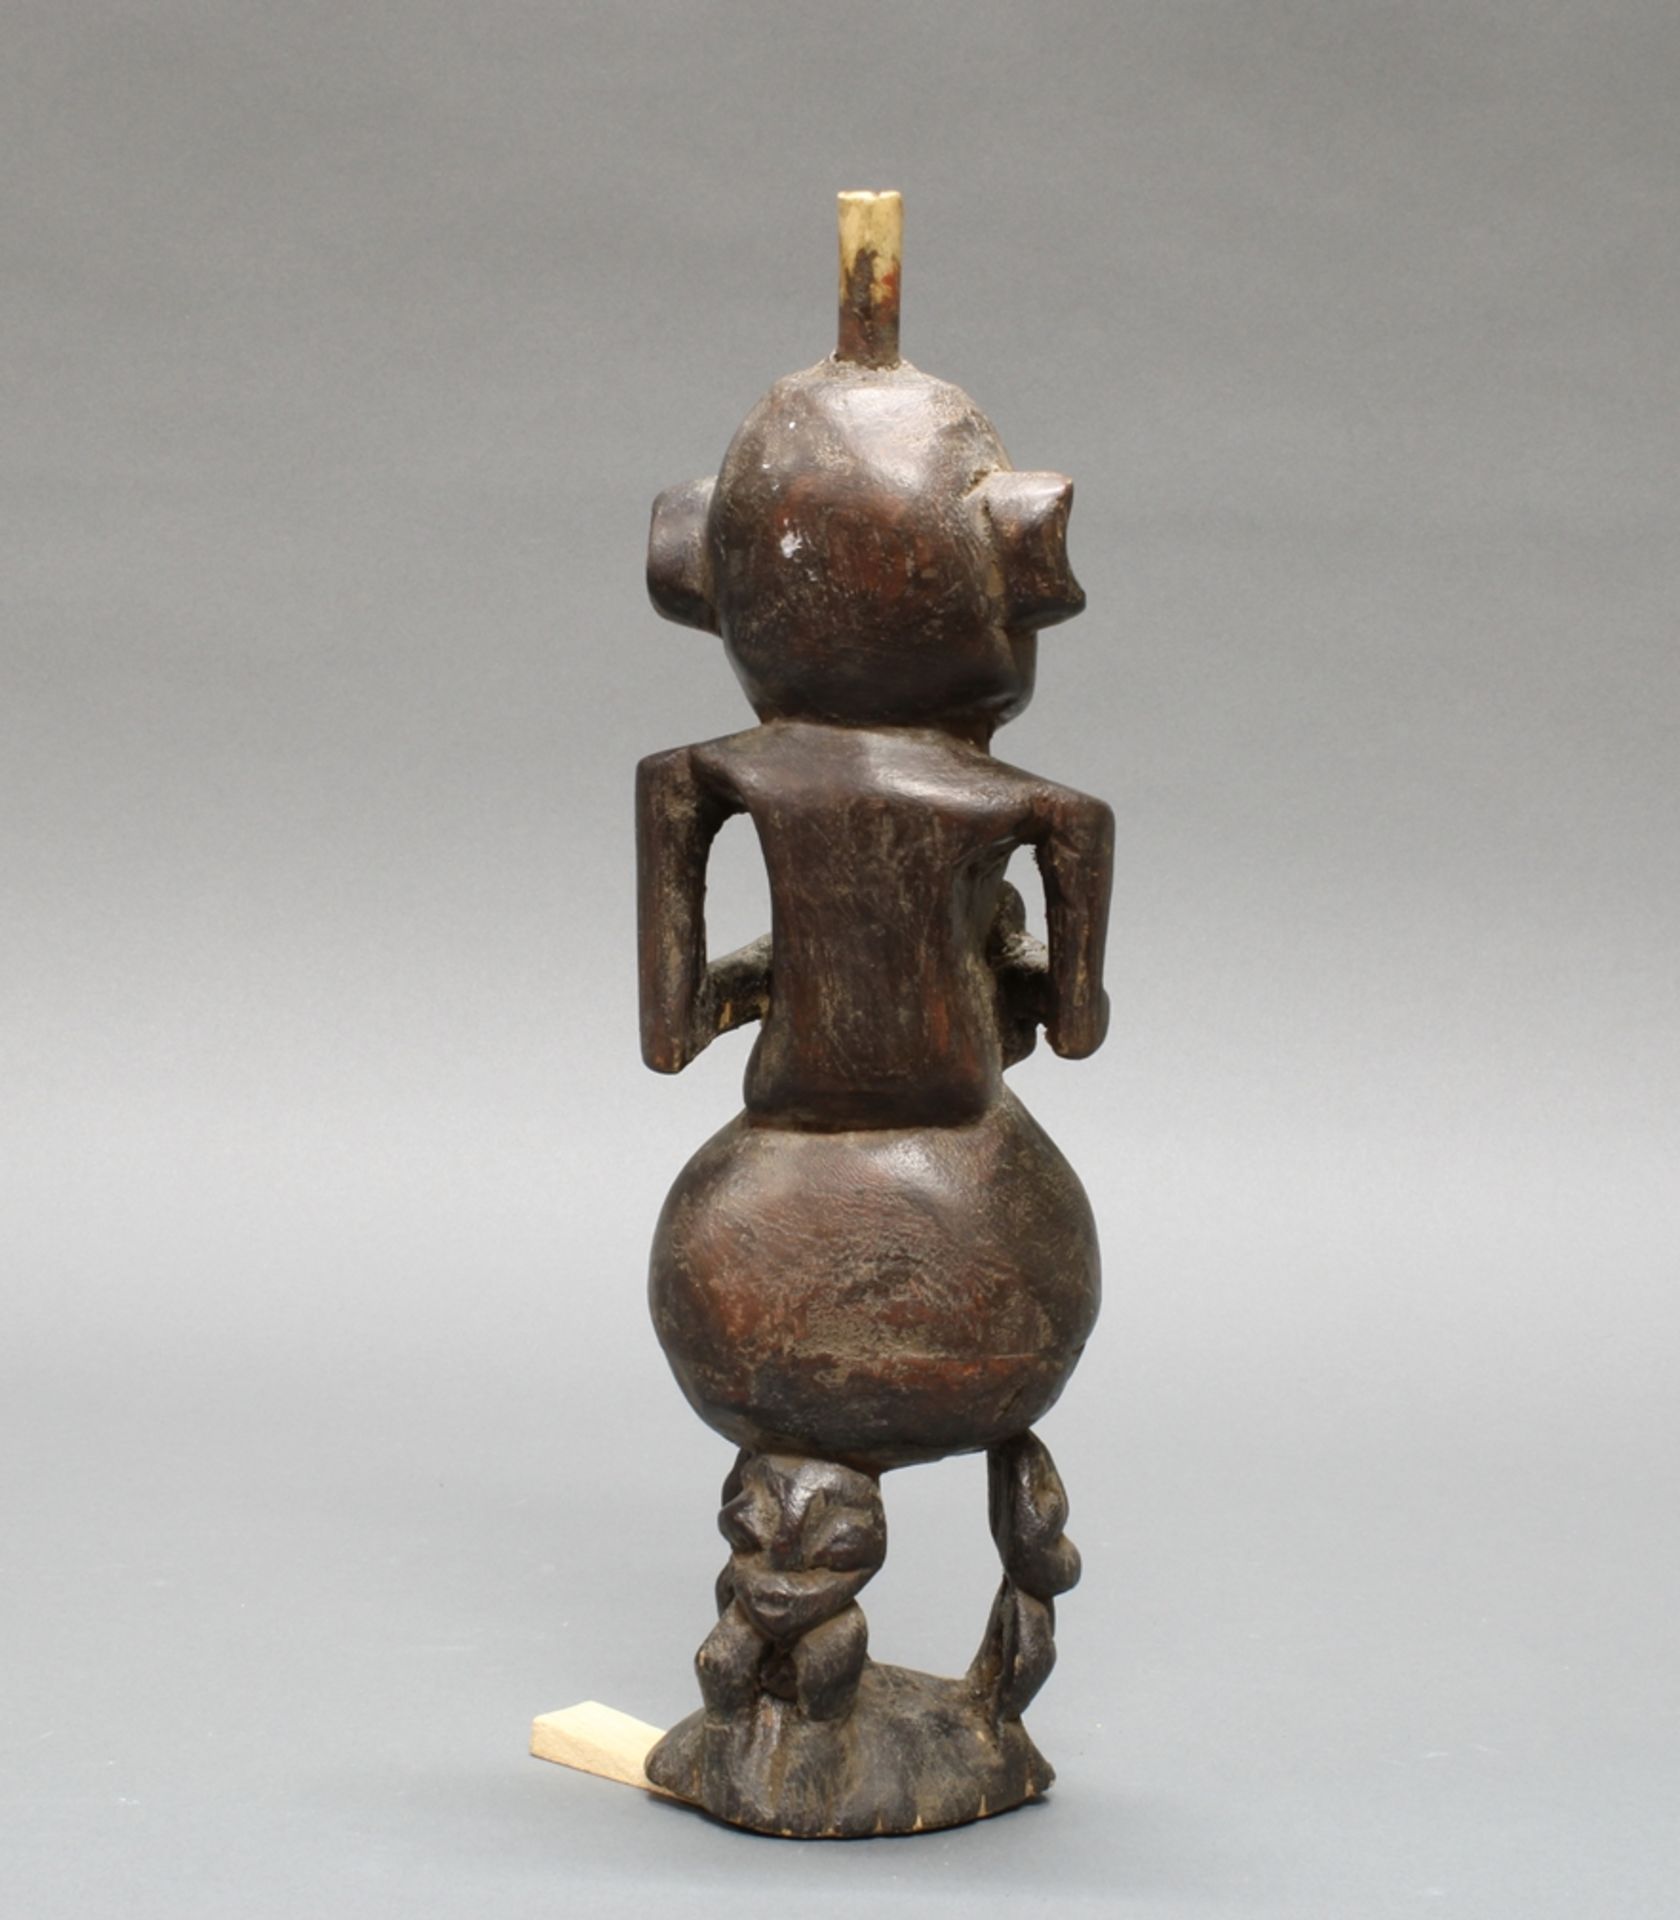 Figürliche Pfeife, Luba, Zaïre, Afrika, authentisch, Holz, 32 cm hoch. - Image 2 of 2